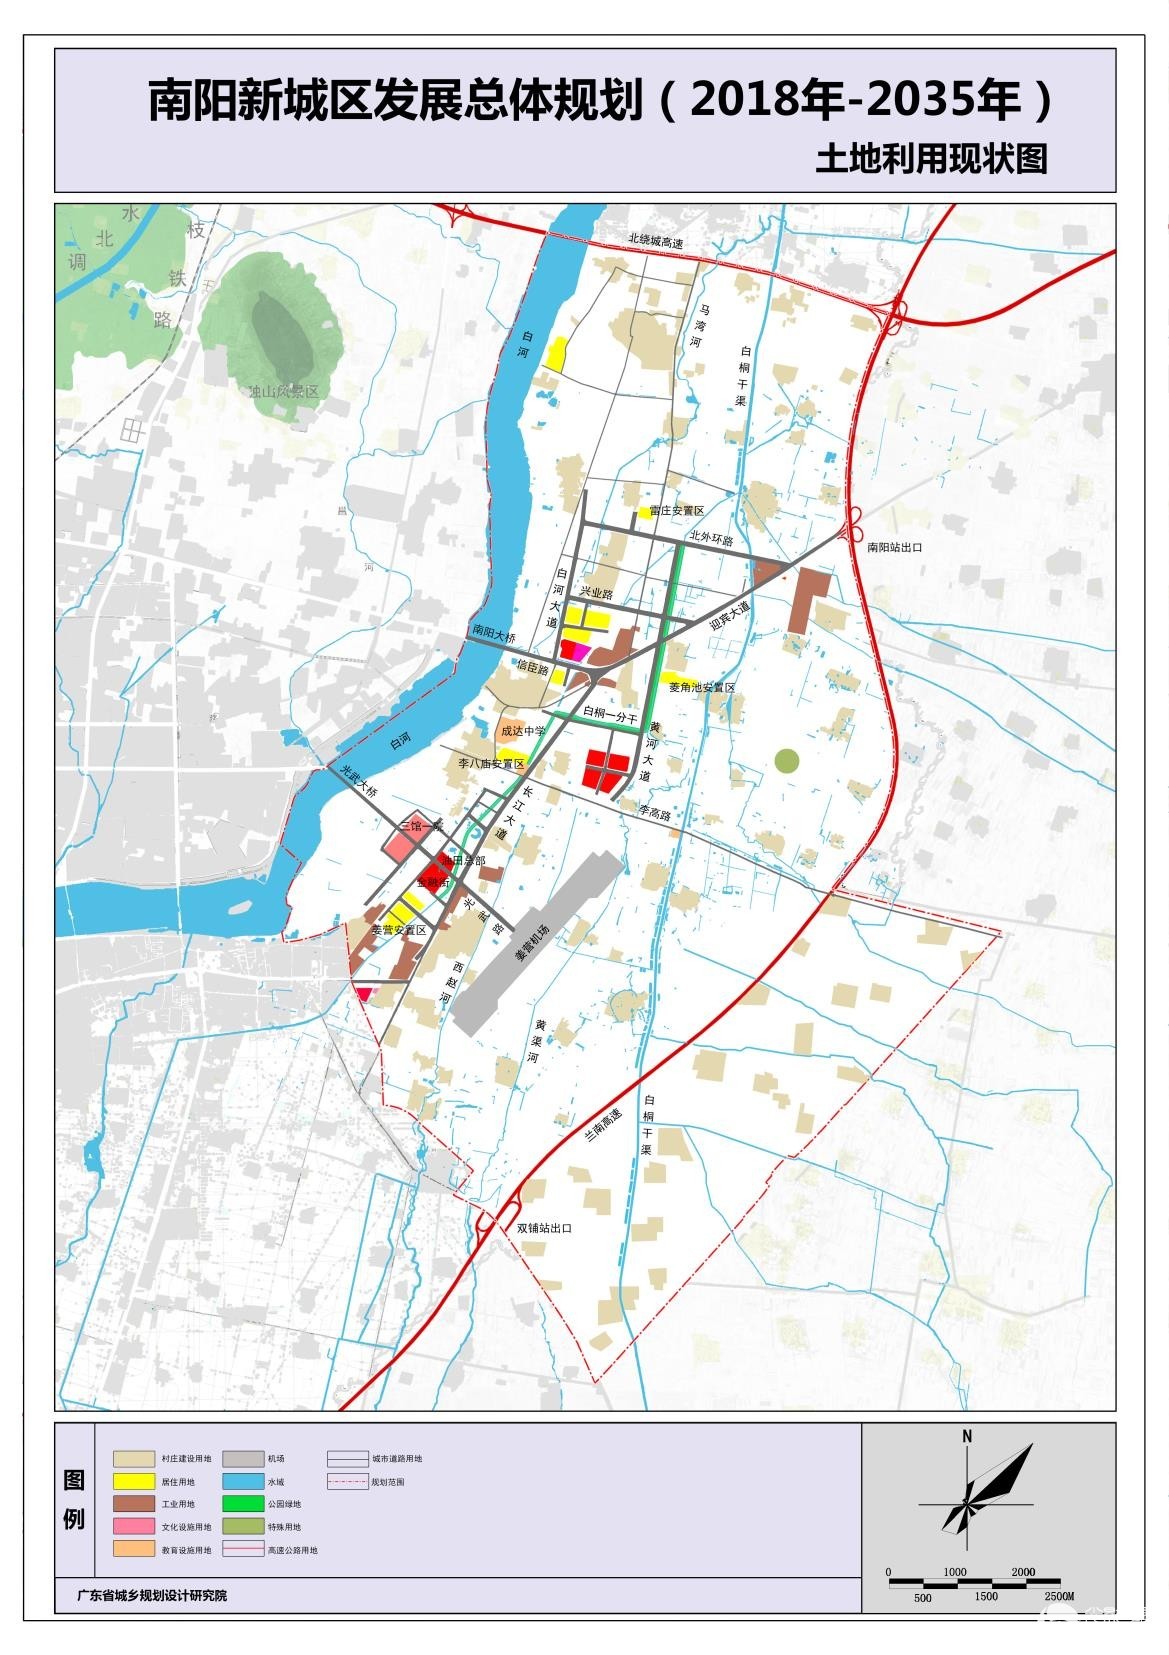 南阳新城区发展总体规划图